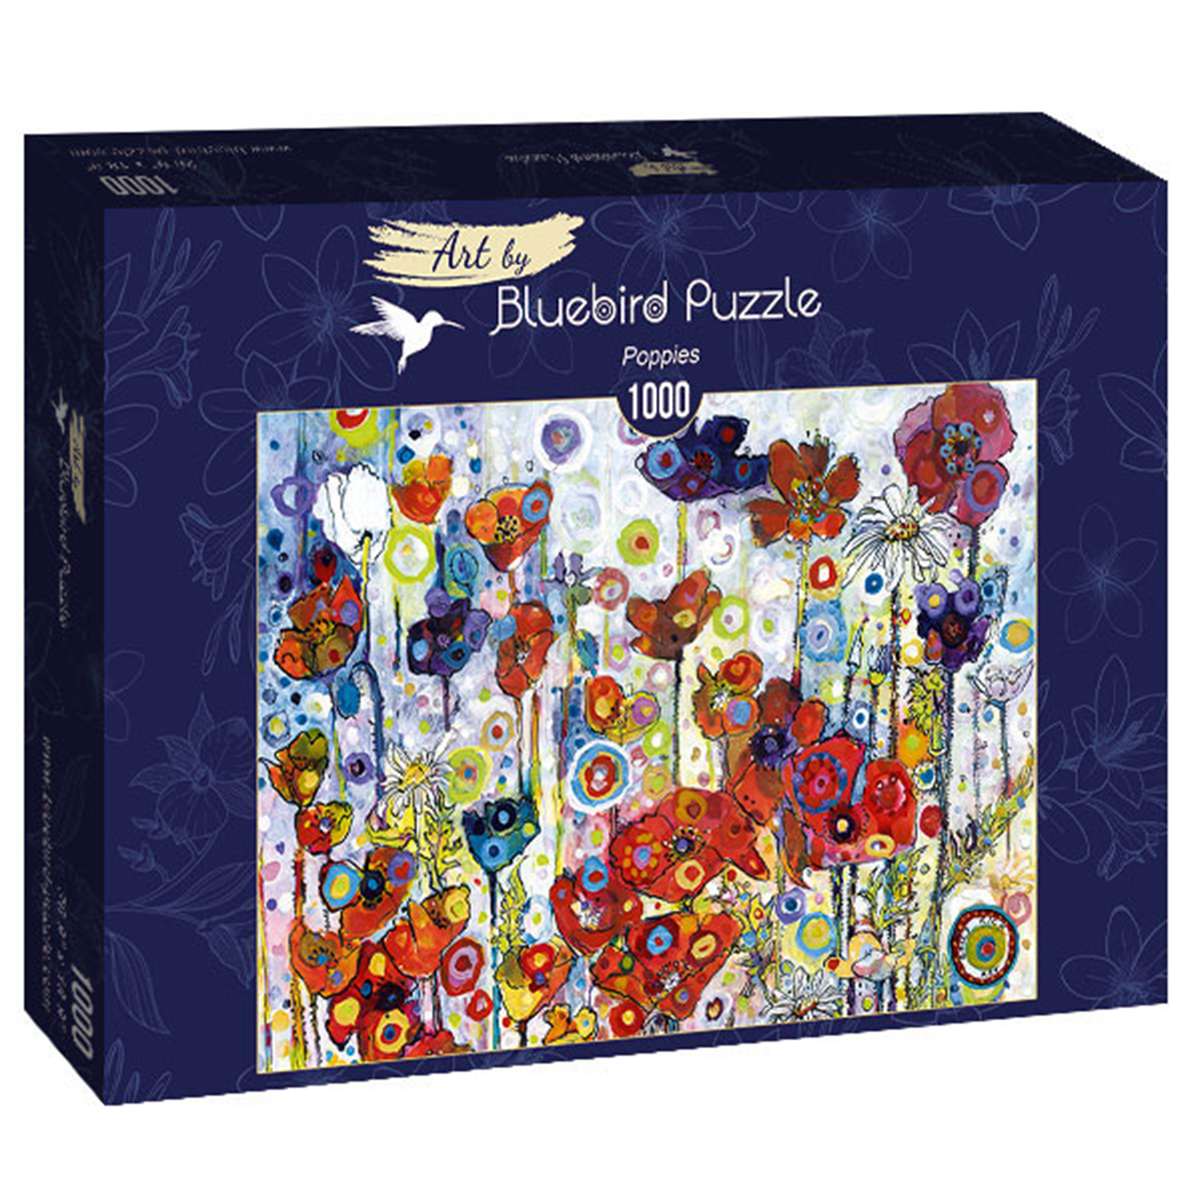 Puzzle Bluebird Amapolas de 1000 piezas